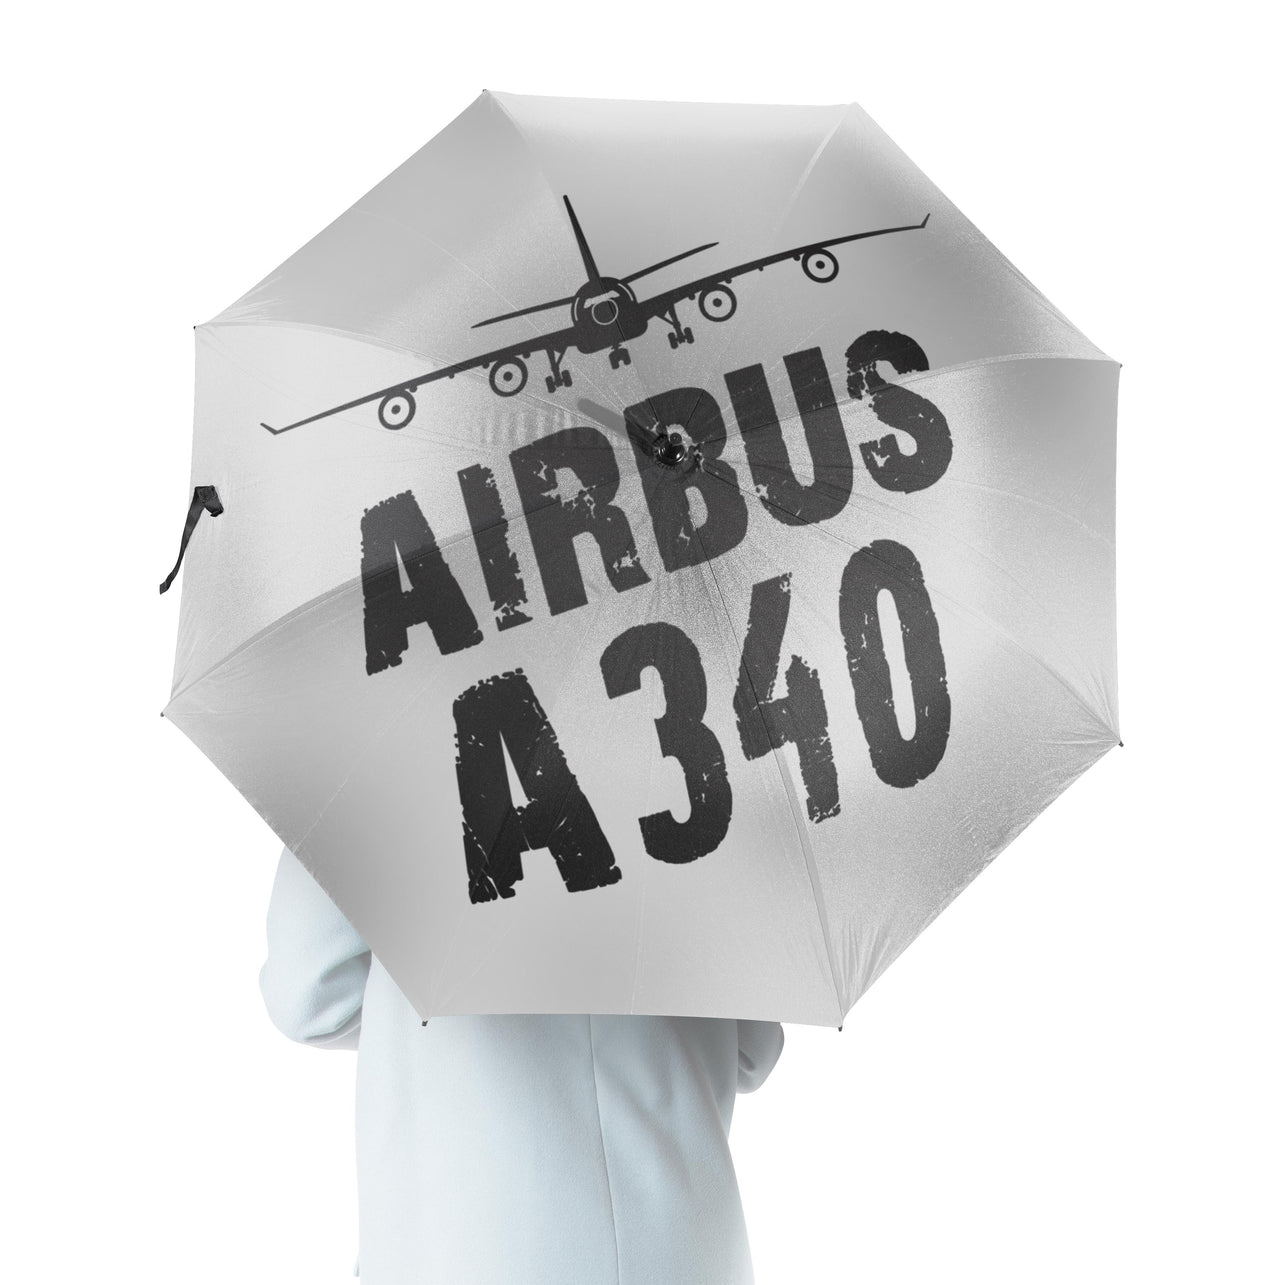 Airbus A340 & Plane Designed Umbrella